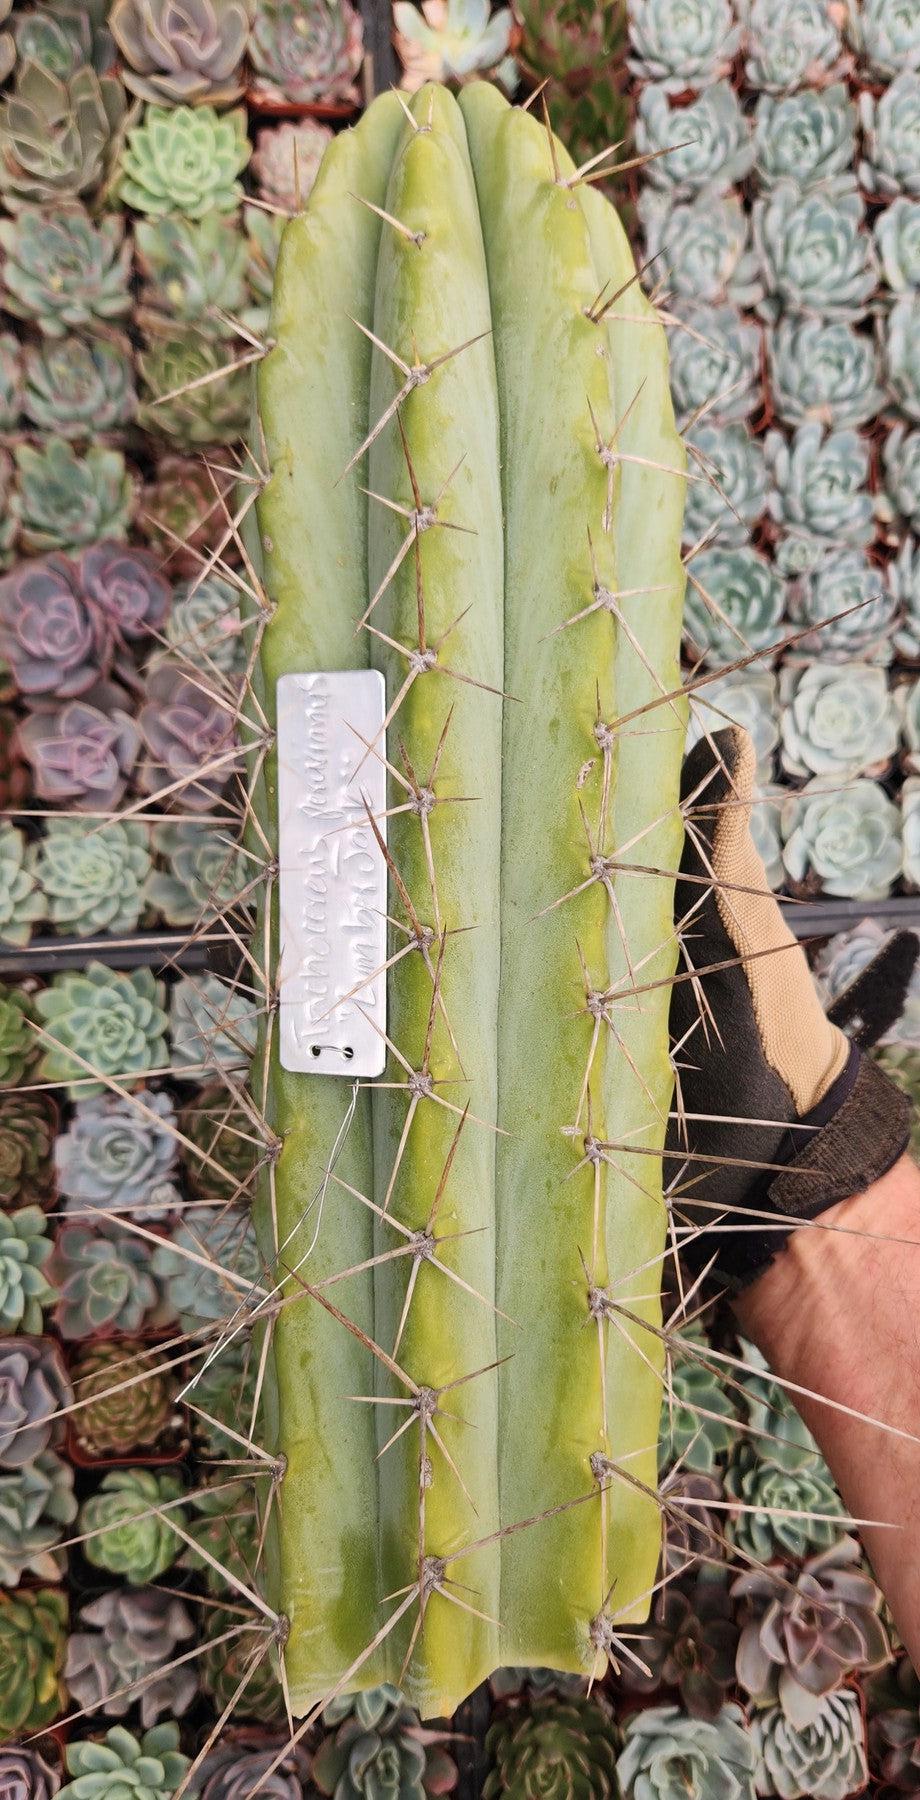 #EC97 EXACT Trichocereus Peruvianus "Lumberjack" Cactus Cuttings-Cactus - Large - Exact-The Succulent Source